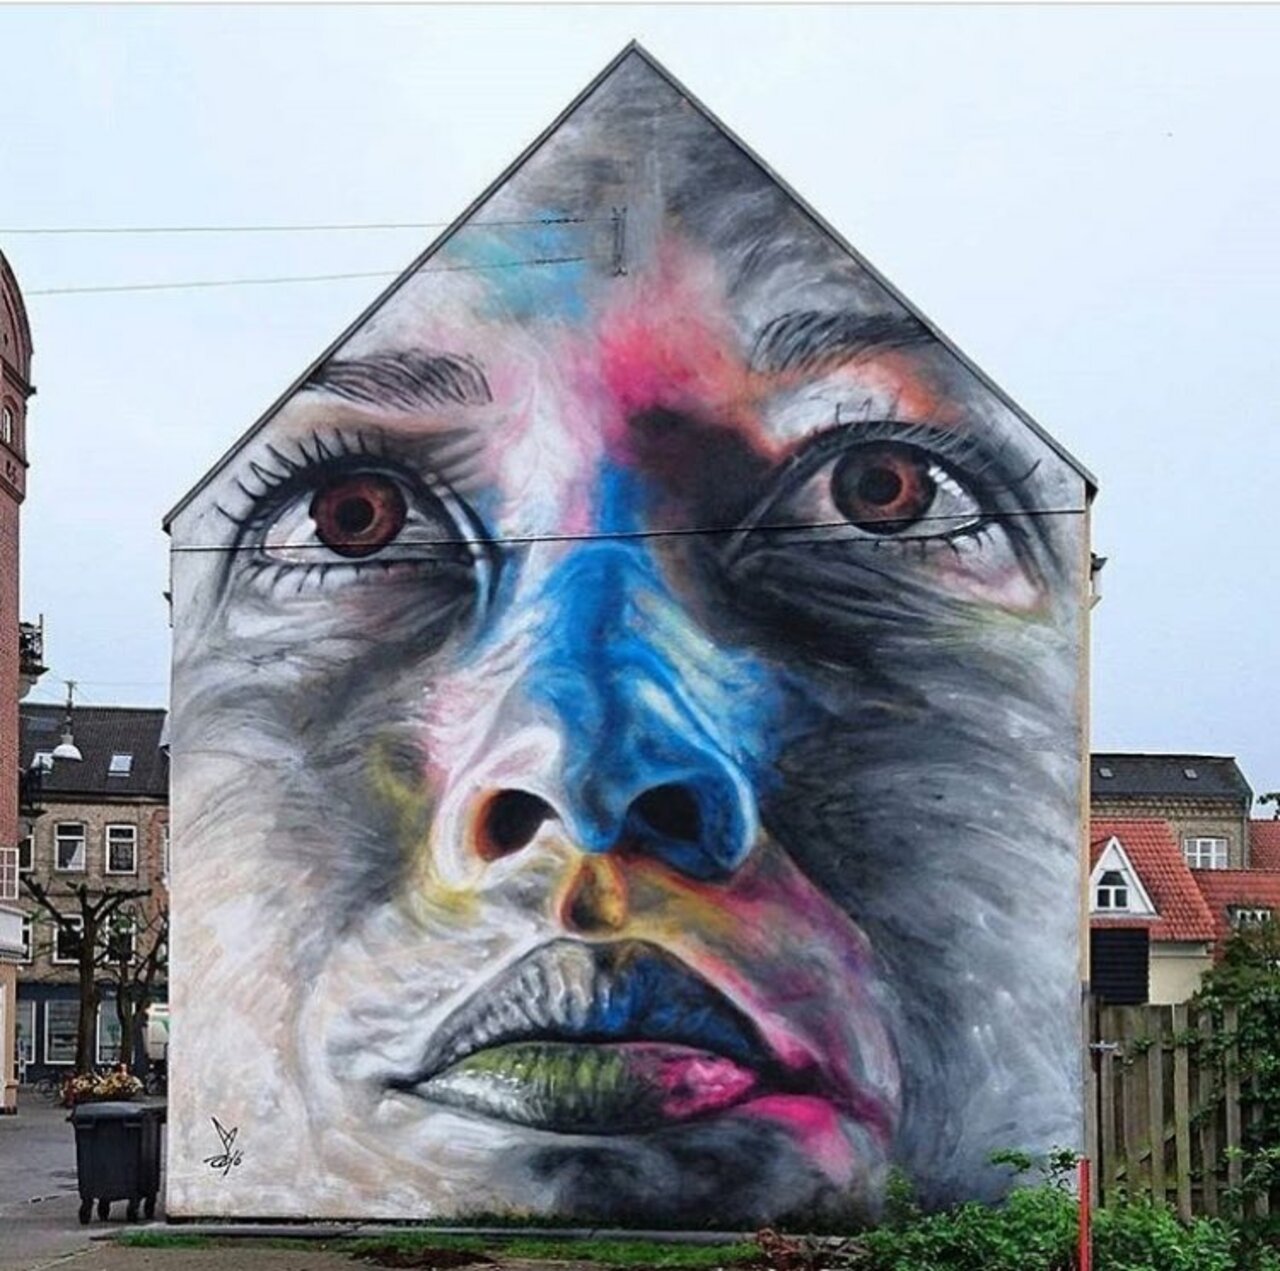 New Street Art by David Walker  Aalborg, Denmark  #art #mural #graffiti #streetart https://t.co/hNiOyJaZKz